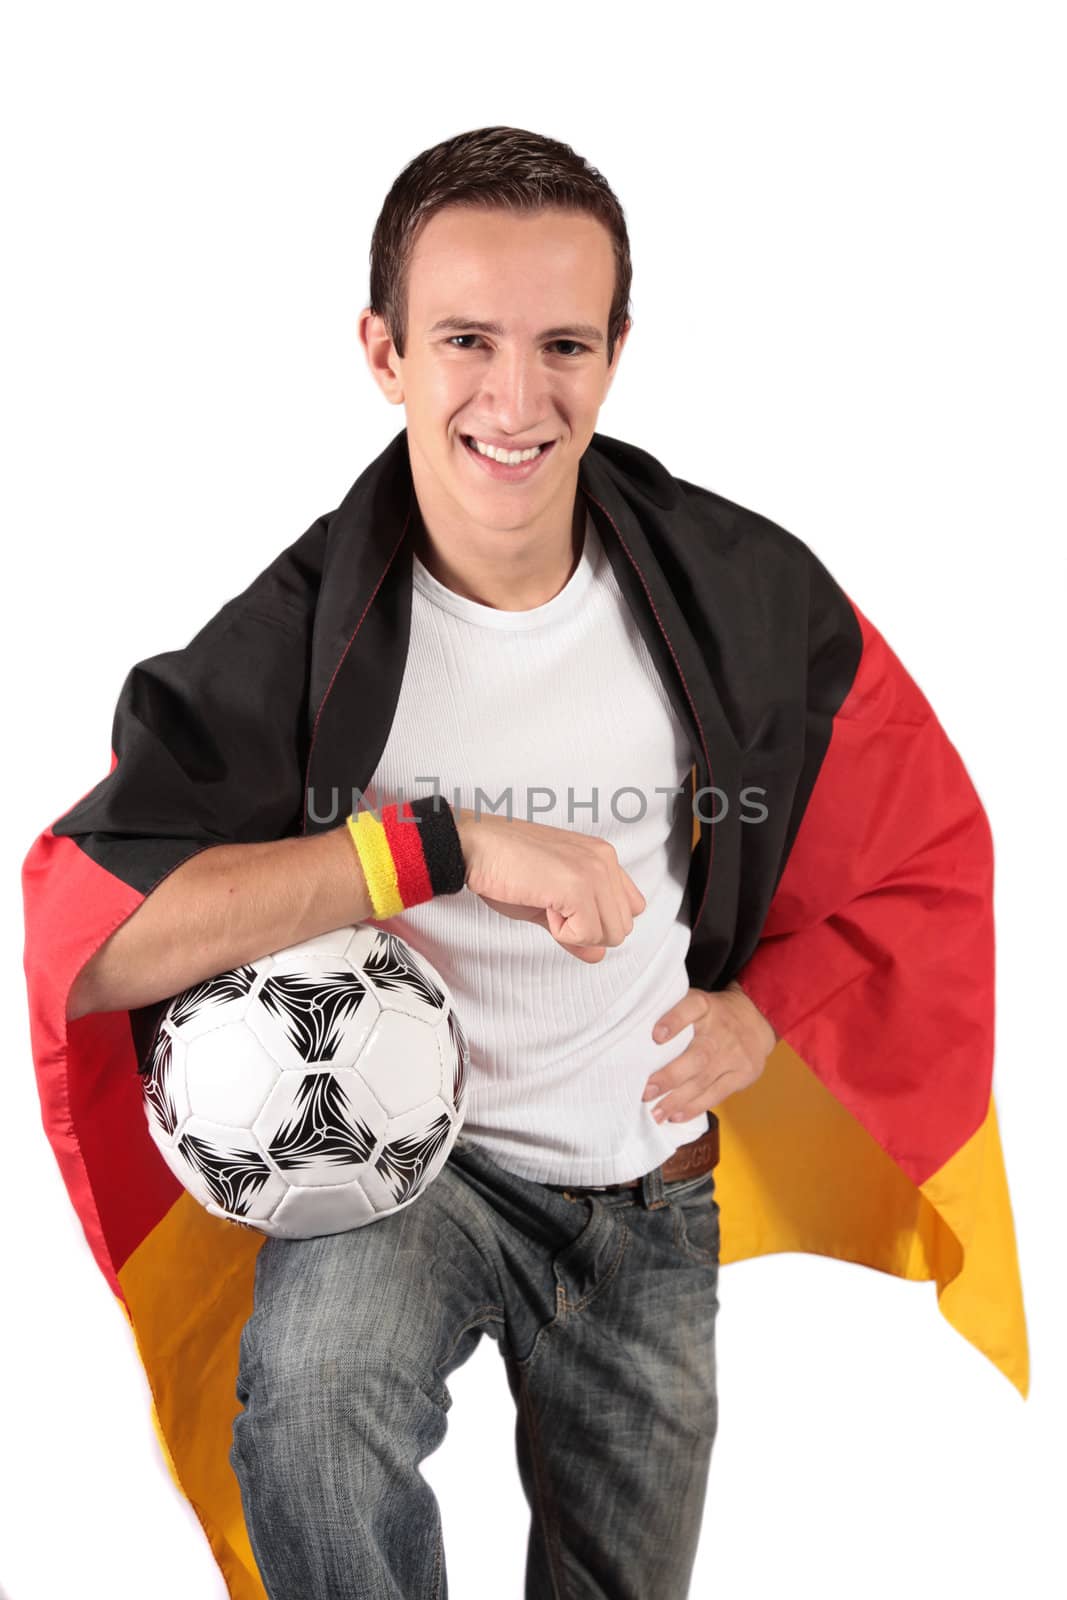 German soccer fan by kaarsten